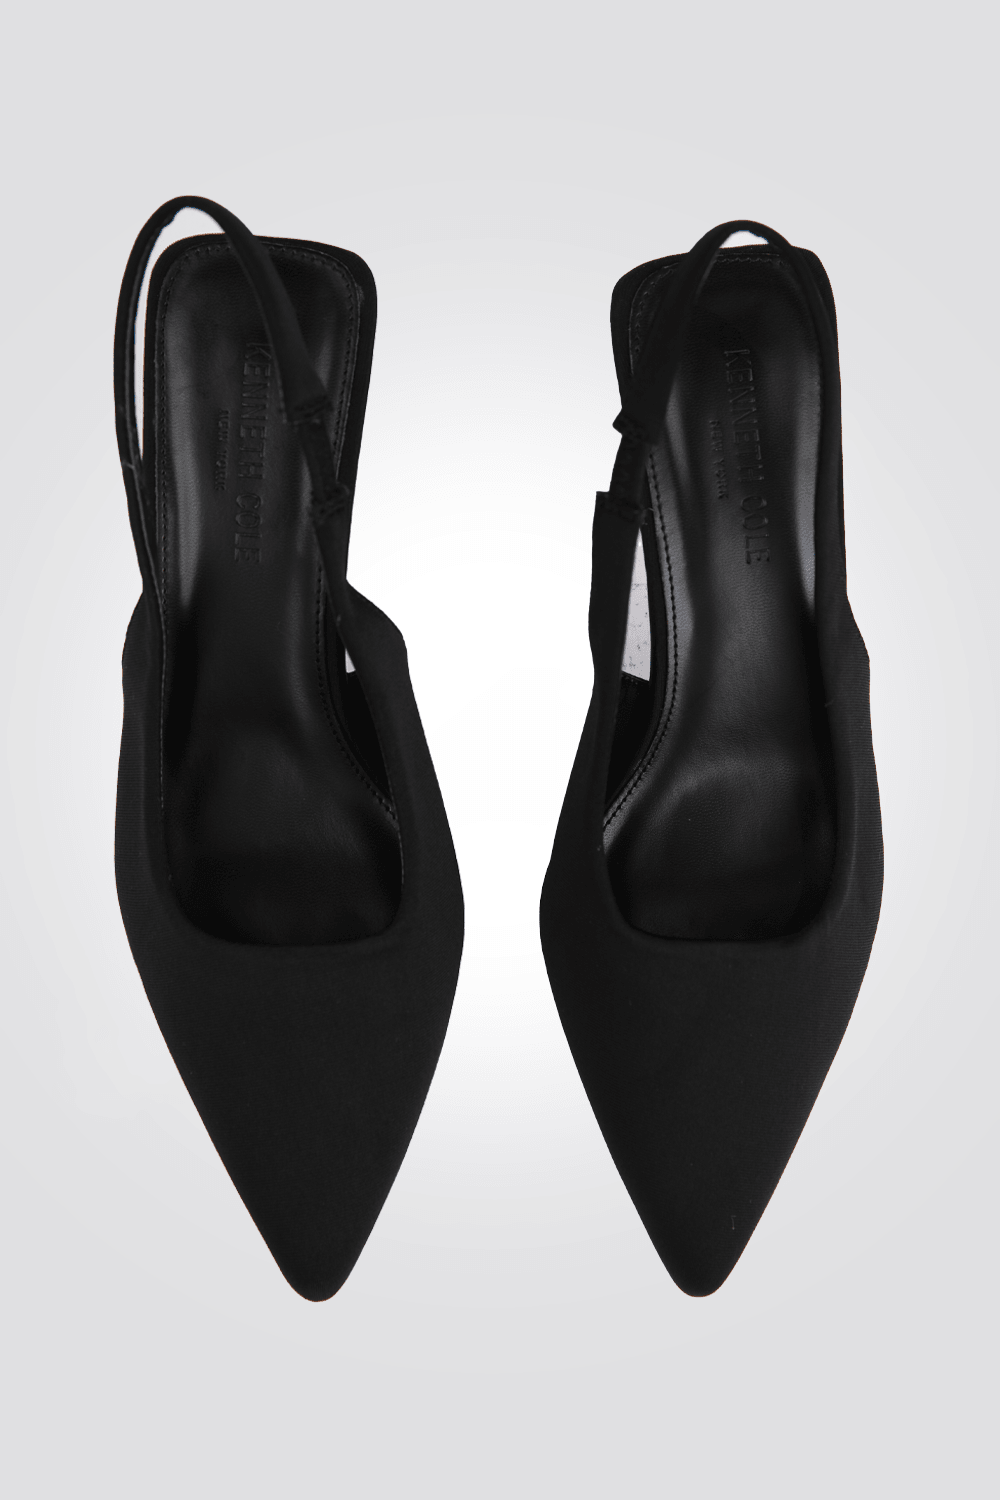 נעל עקב FABRIC SANDAL בצבע שחור - MASHBIR//365